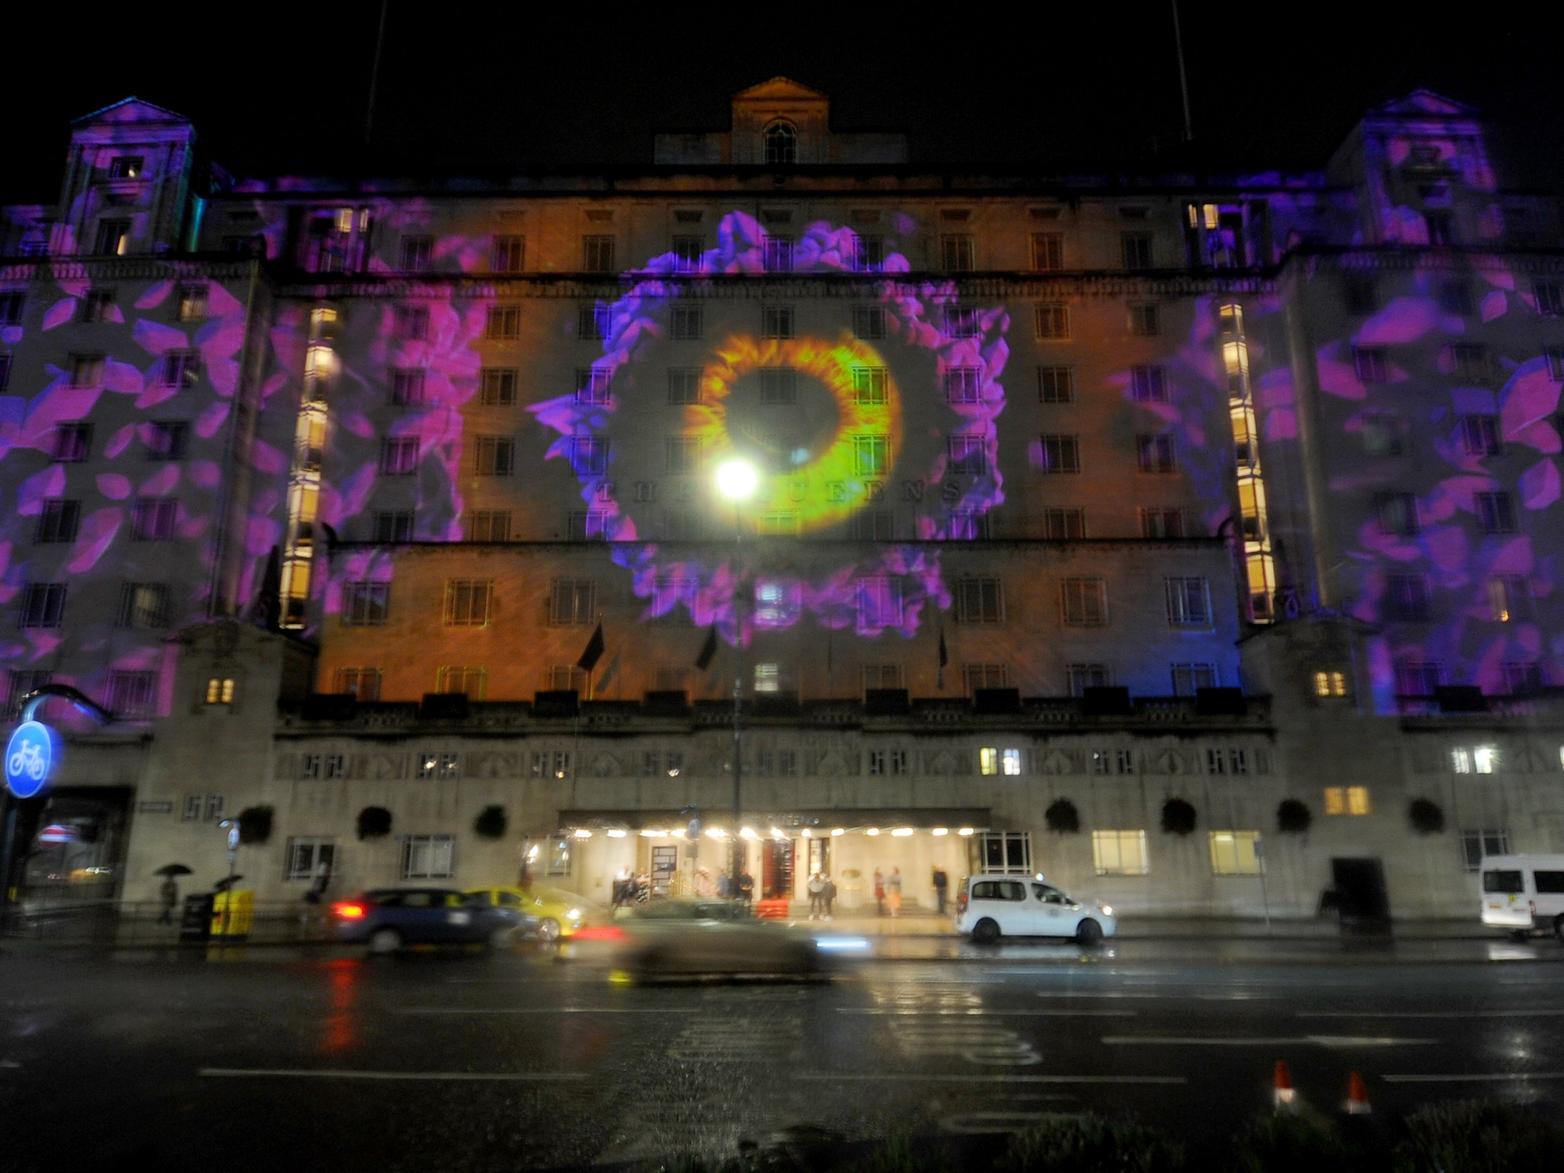 Leeds' most famous hotel lit up.